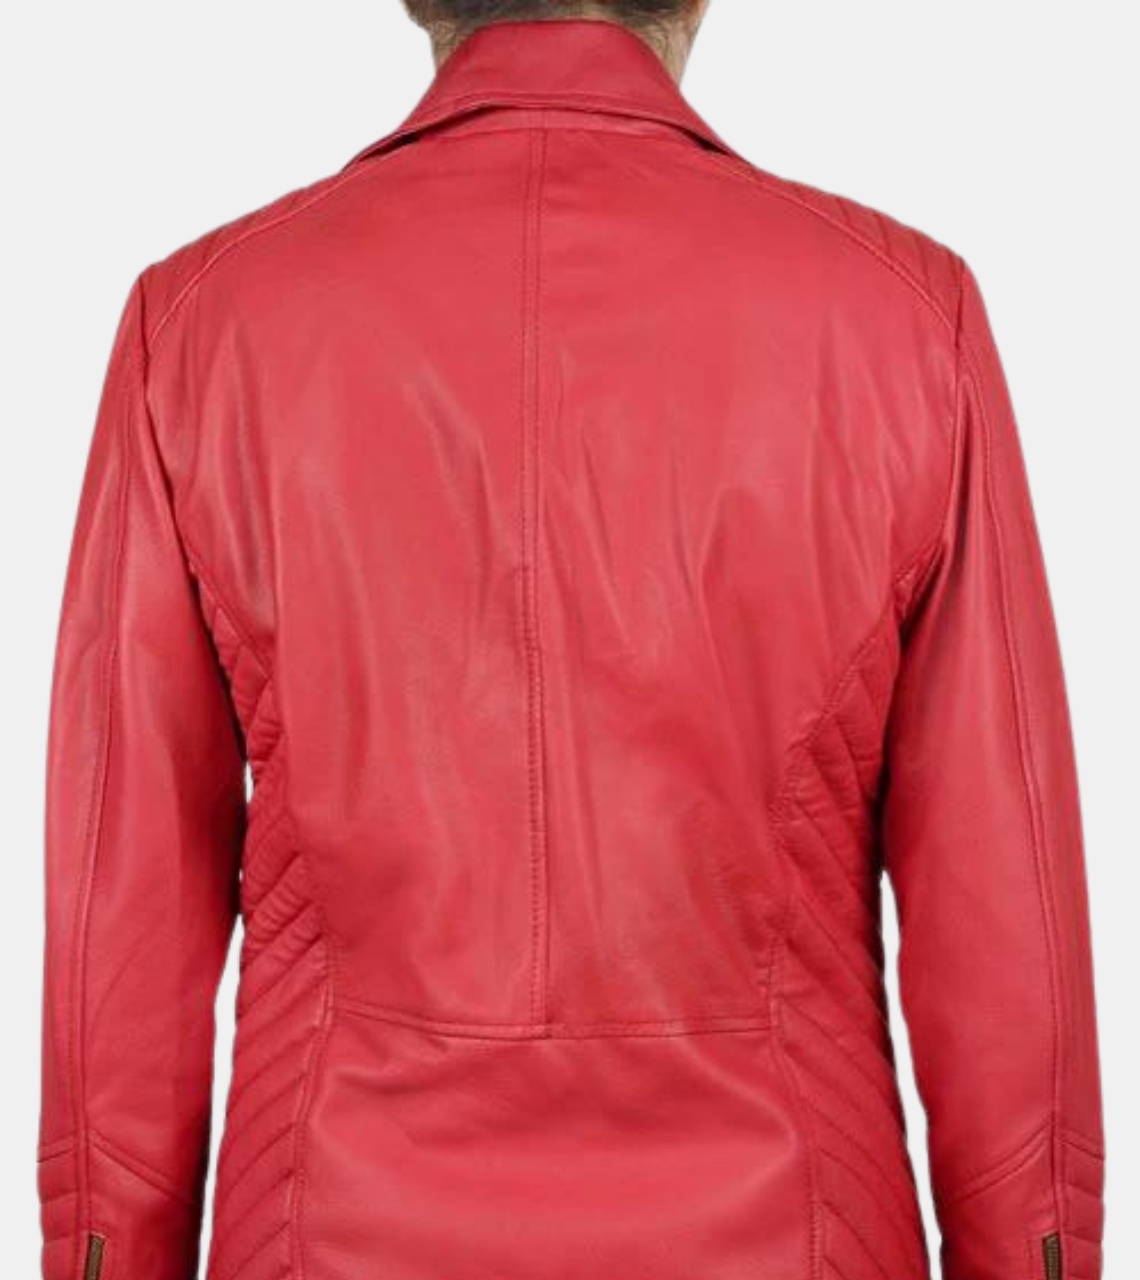 Hearste Women's Red Biker's Leather Jacket Back